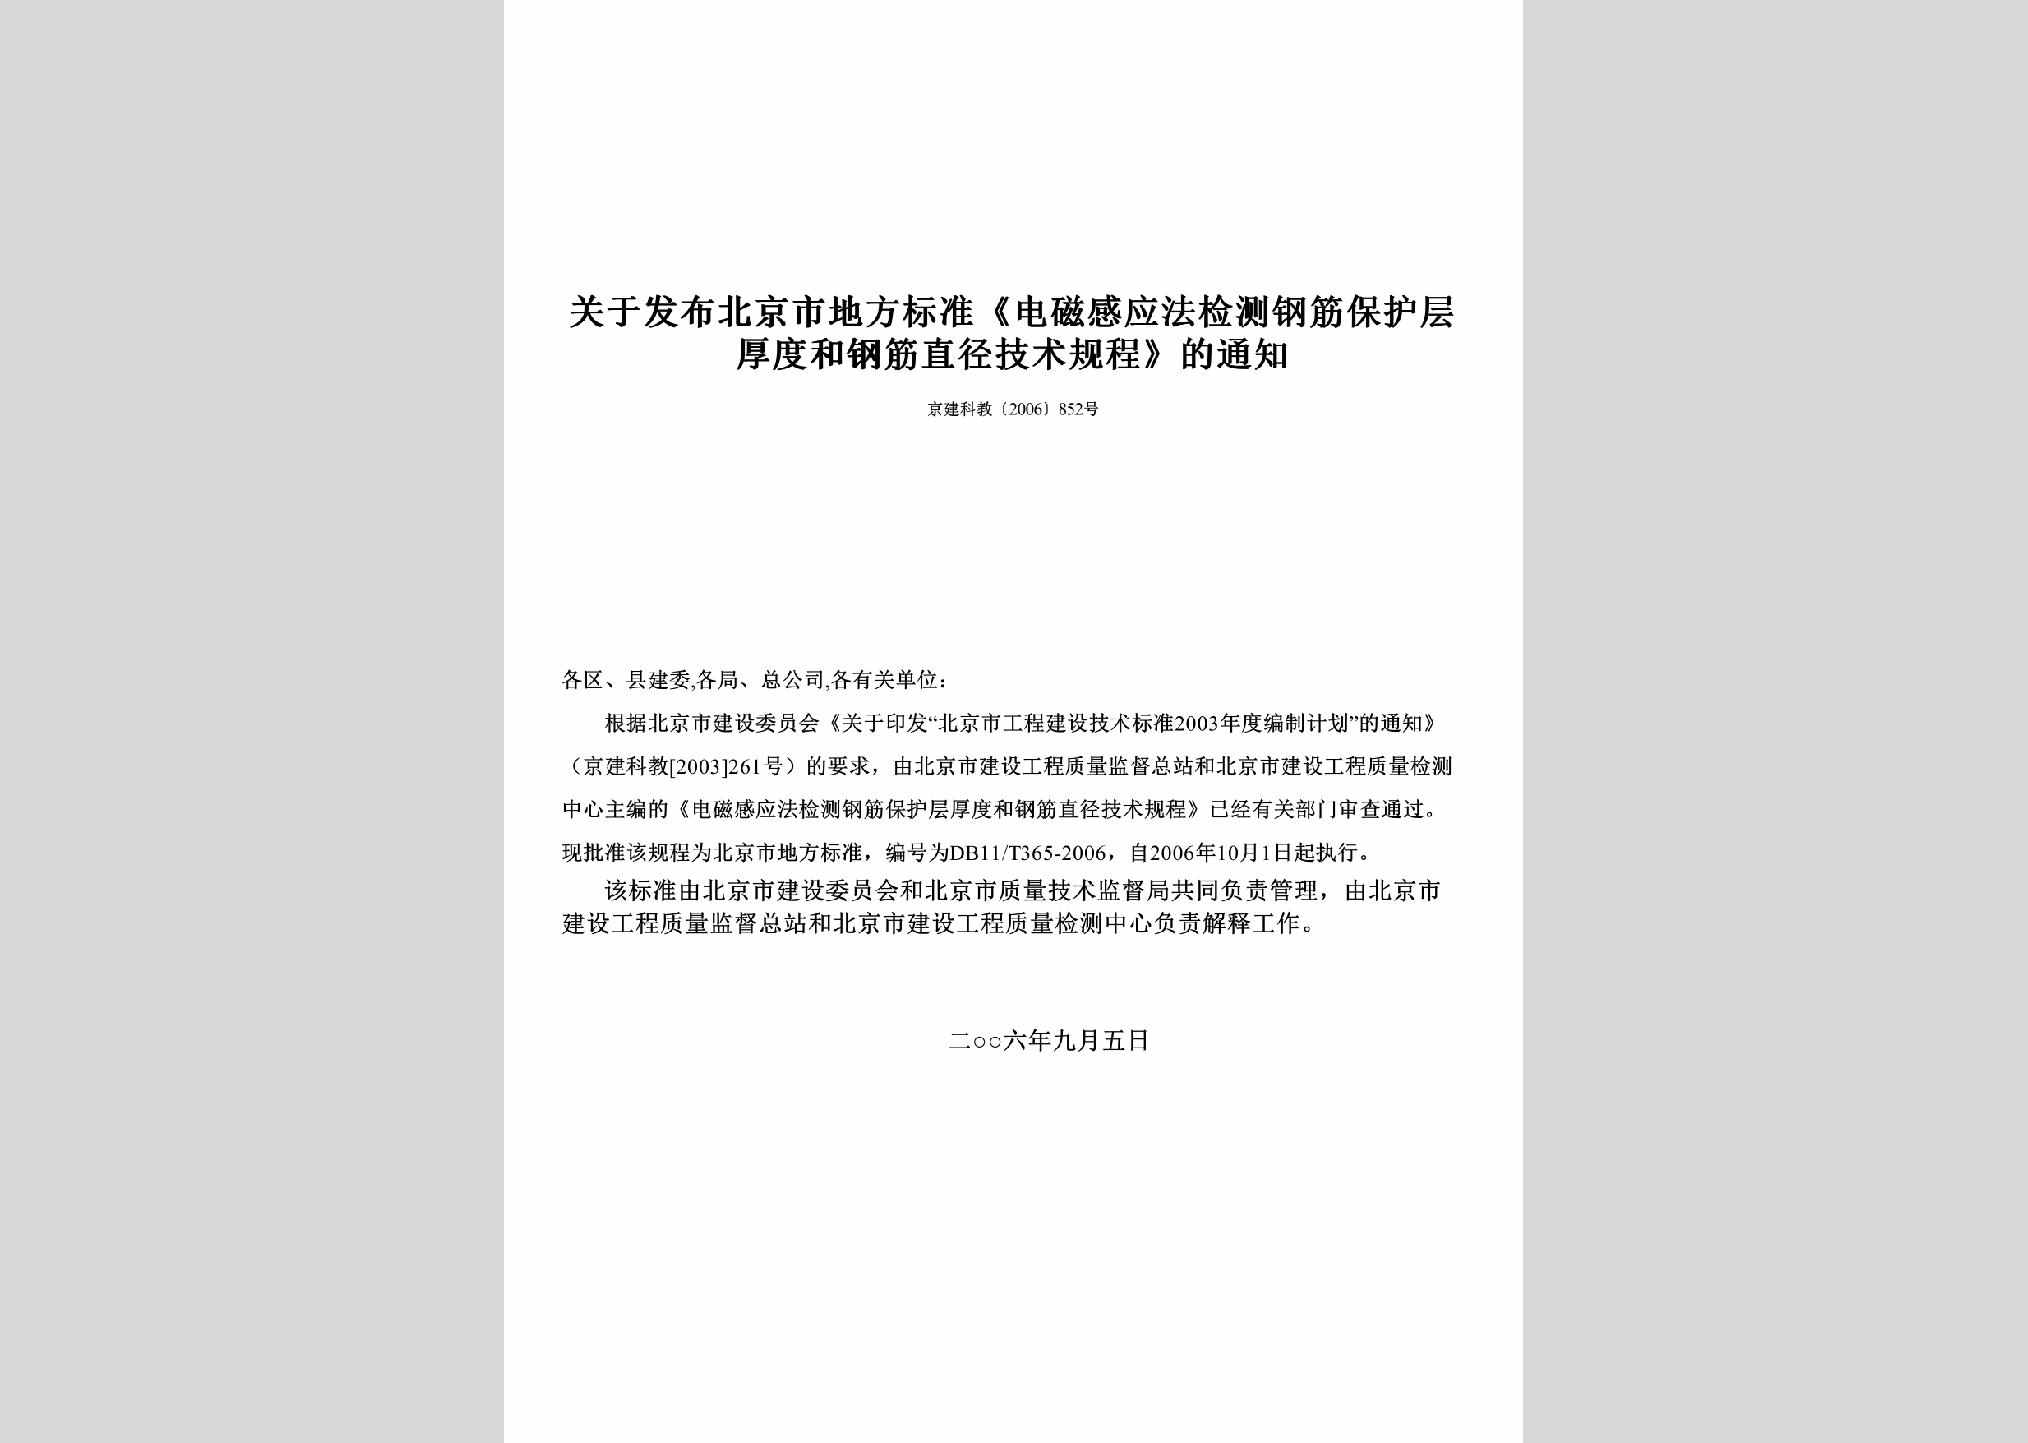 京建科教[2006]852号：关于发布北京市地方标准《电磁感应法检测钢筋保护层厚度和钢筋直径技术规程》的通知